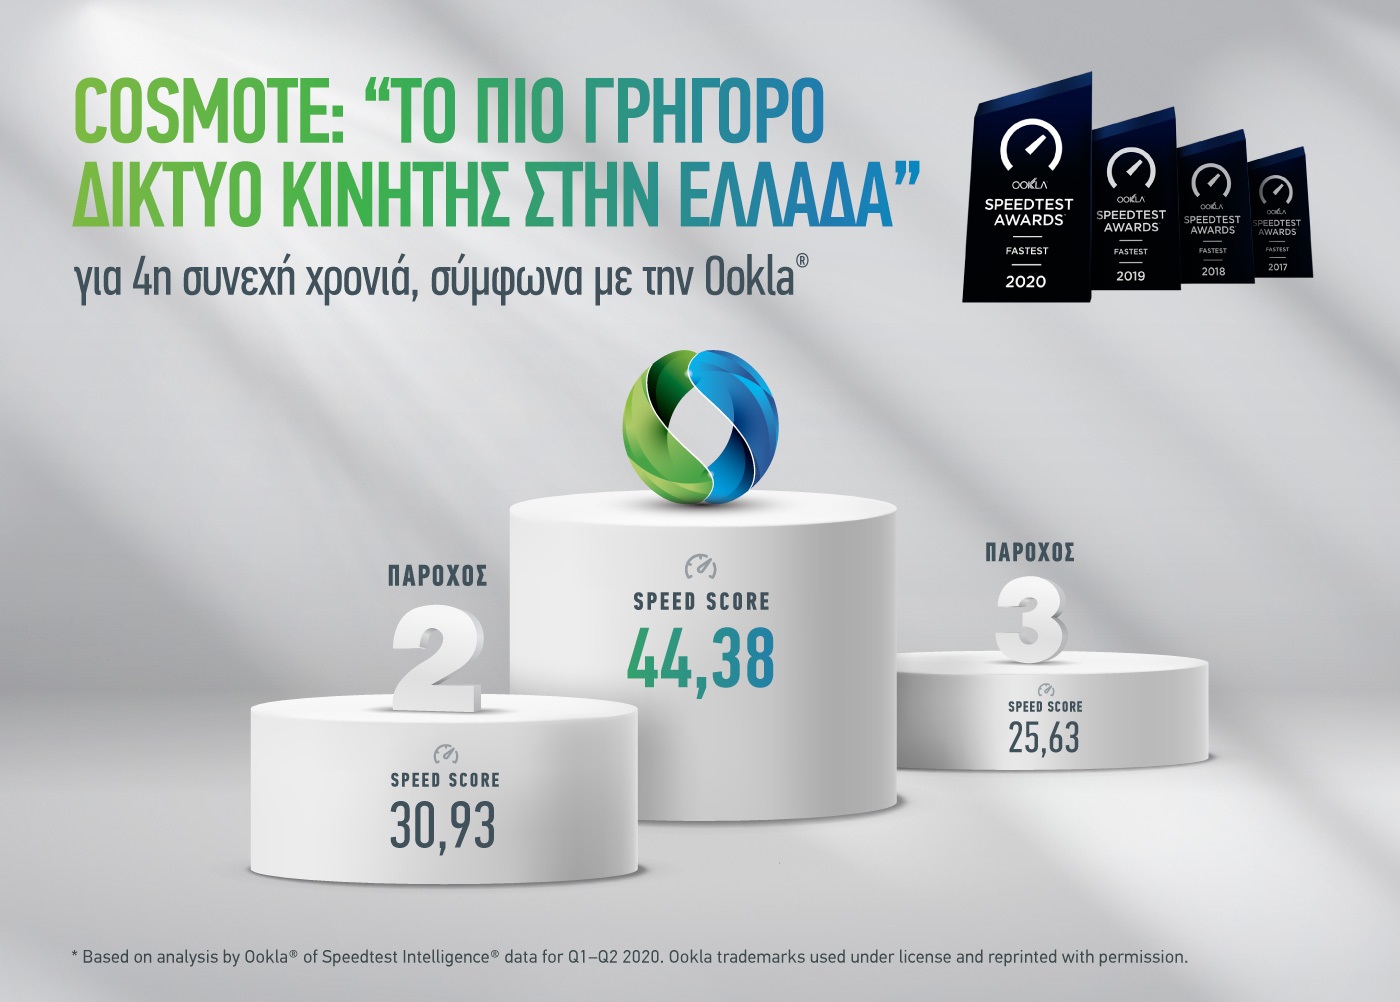 COSMOTE:”Tο πιο γρήγορο δίκτυο κινητής στην Ελλάδα» για 4η σερί χρονιά, σύμφωνα με Ookla”